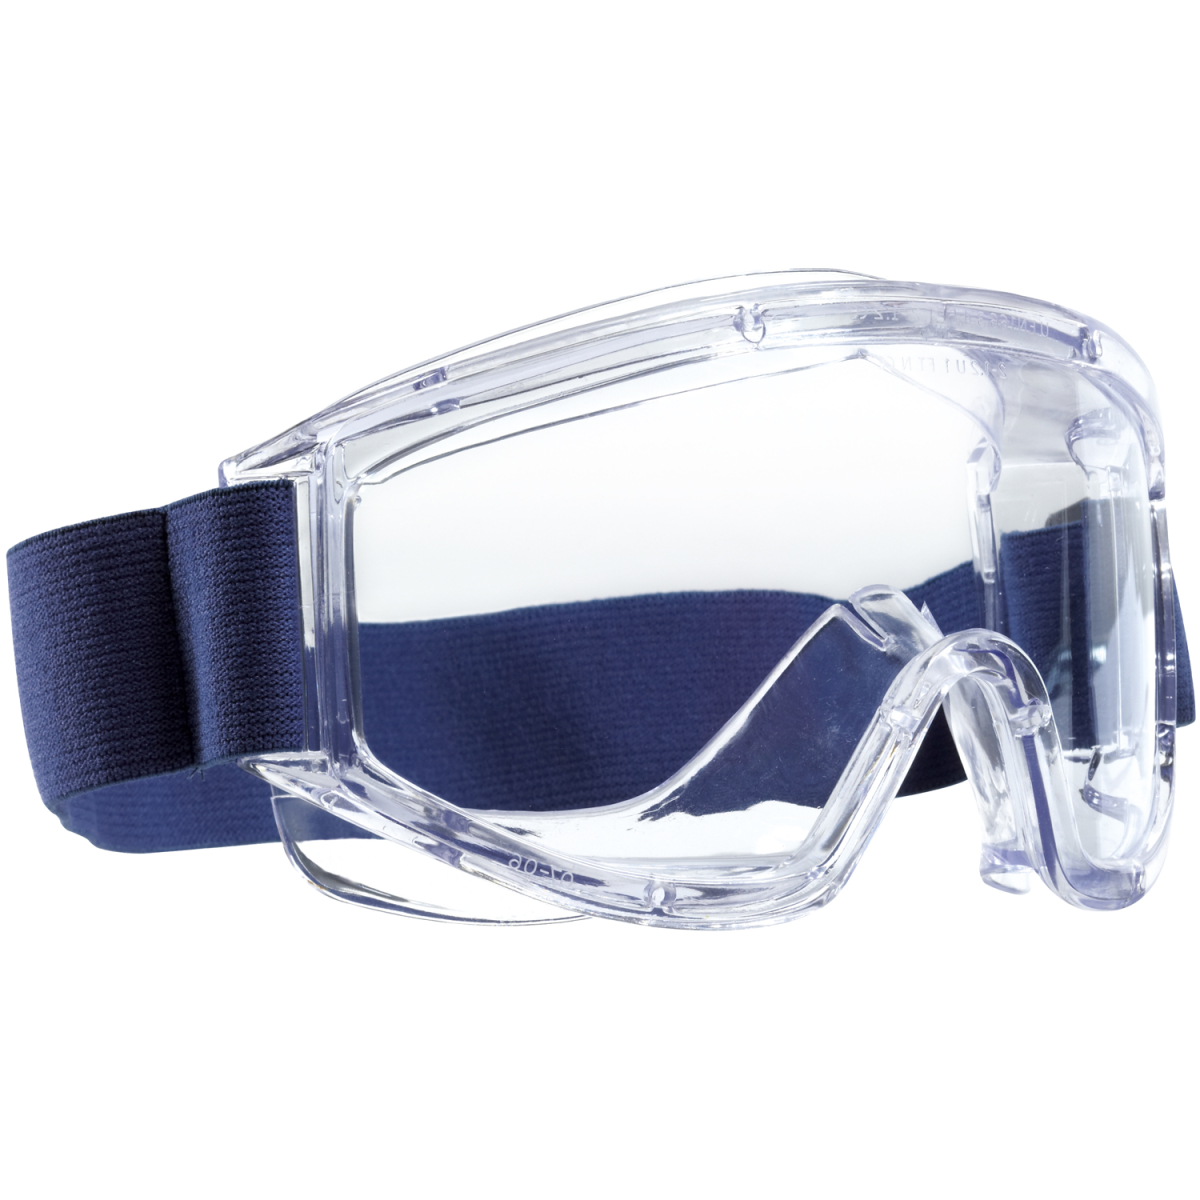 vollsichtschutzbrille mit transparentem rahmen und blauem breiten gummiband